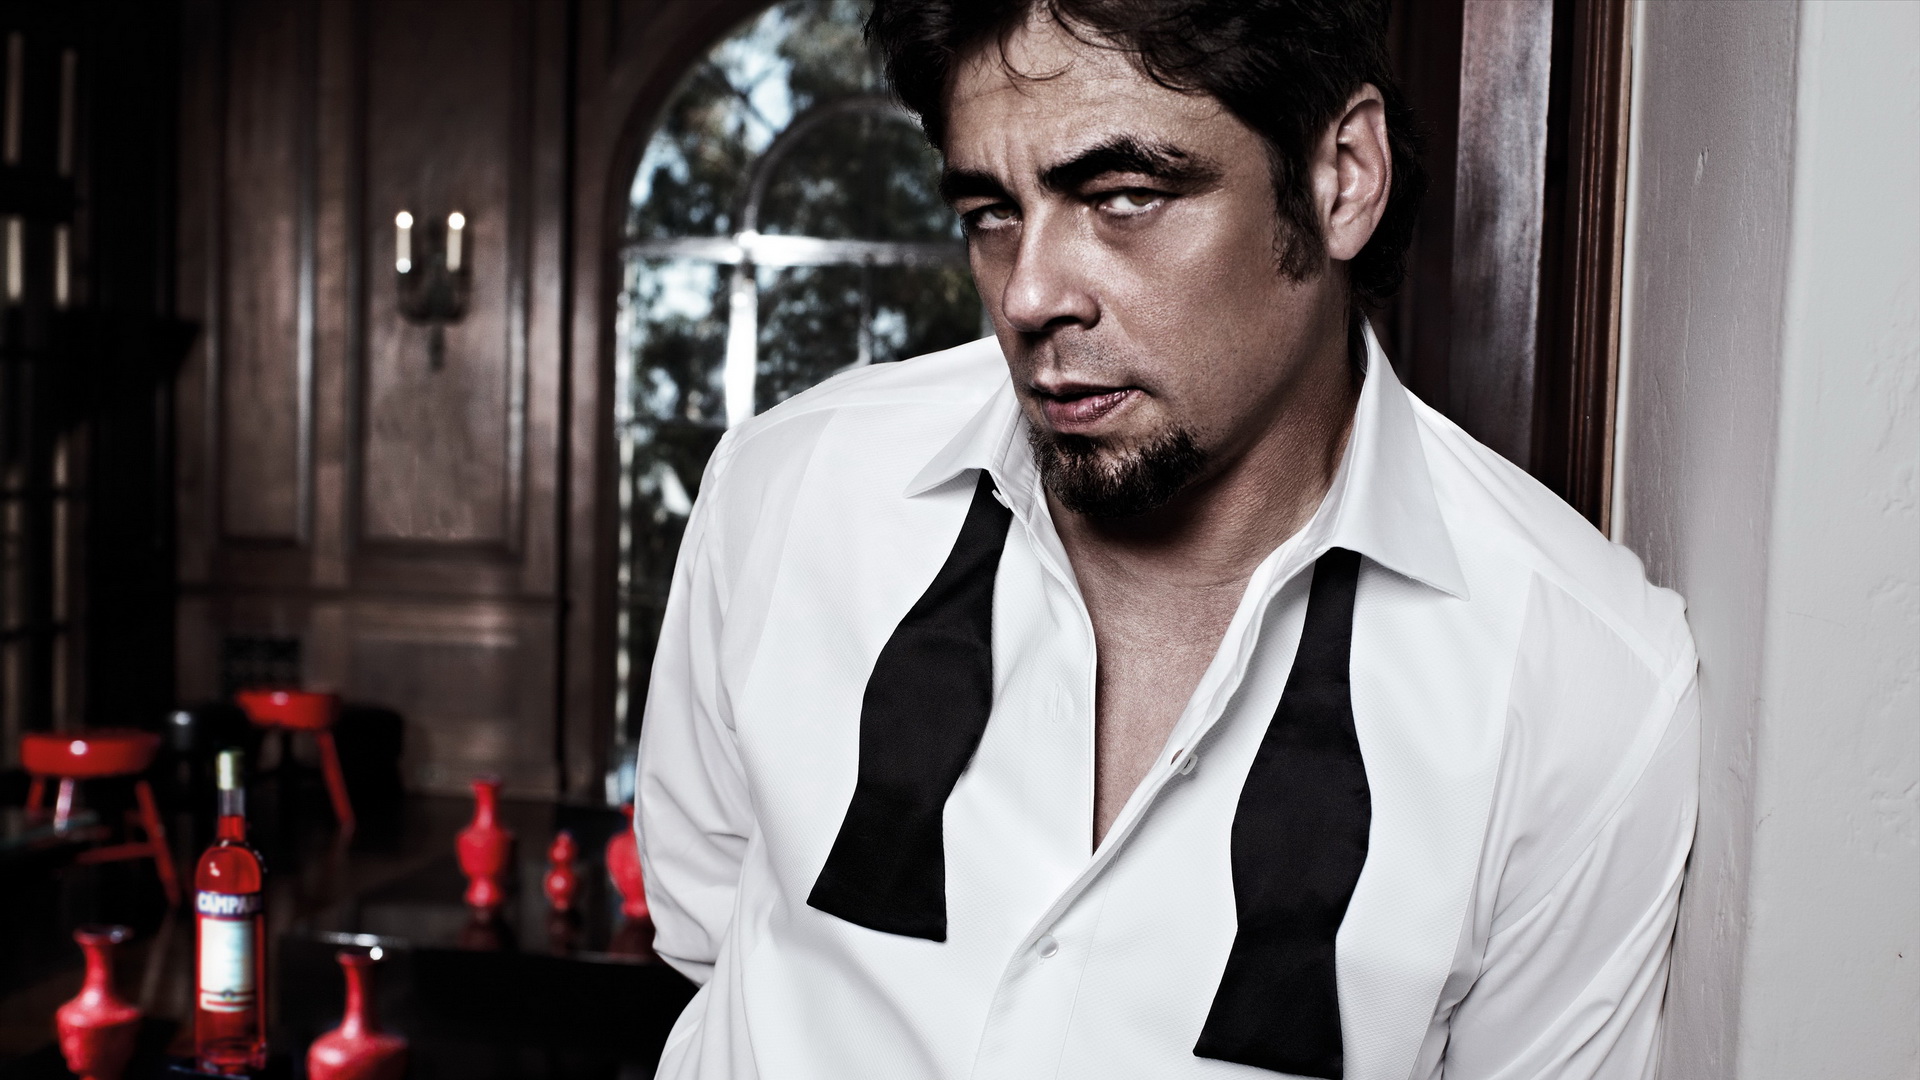 Benicio del toro movies